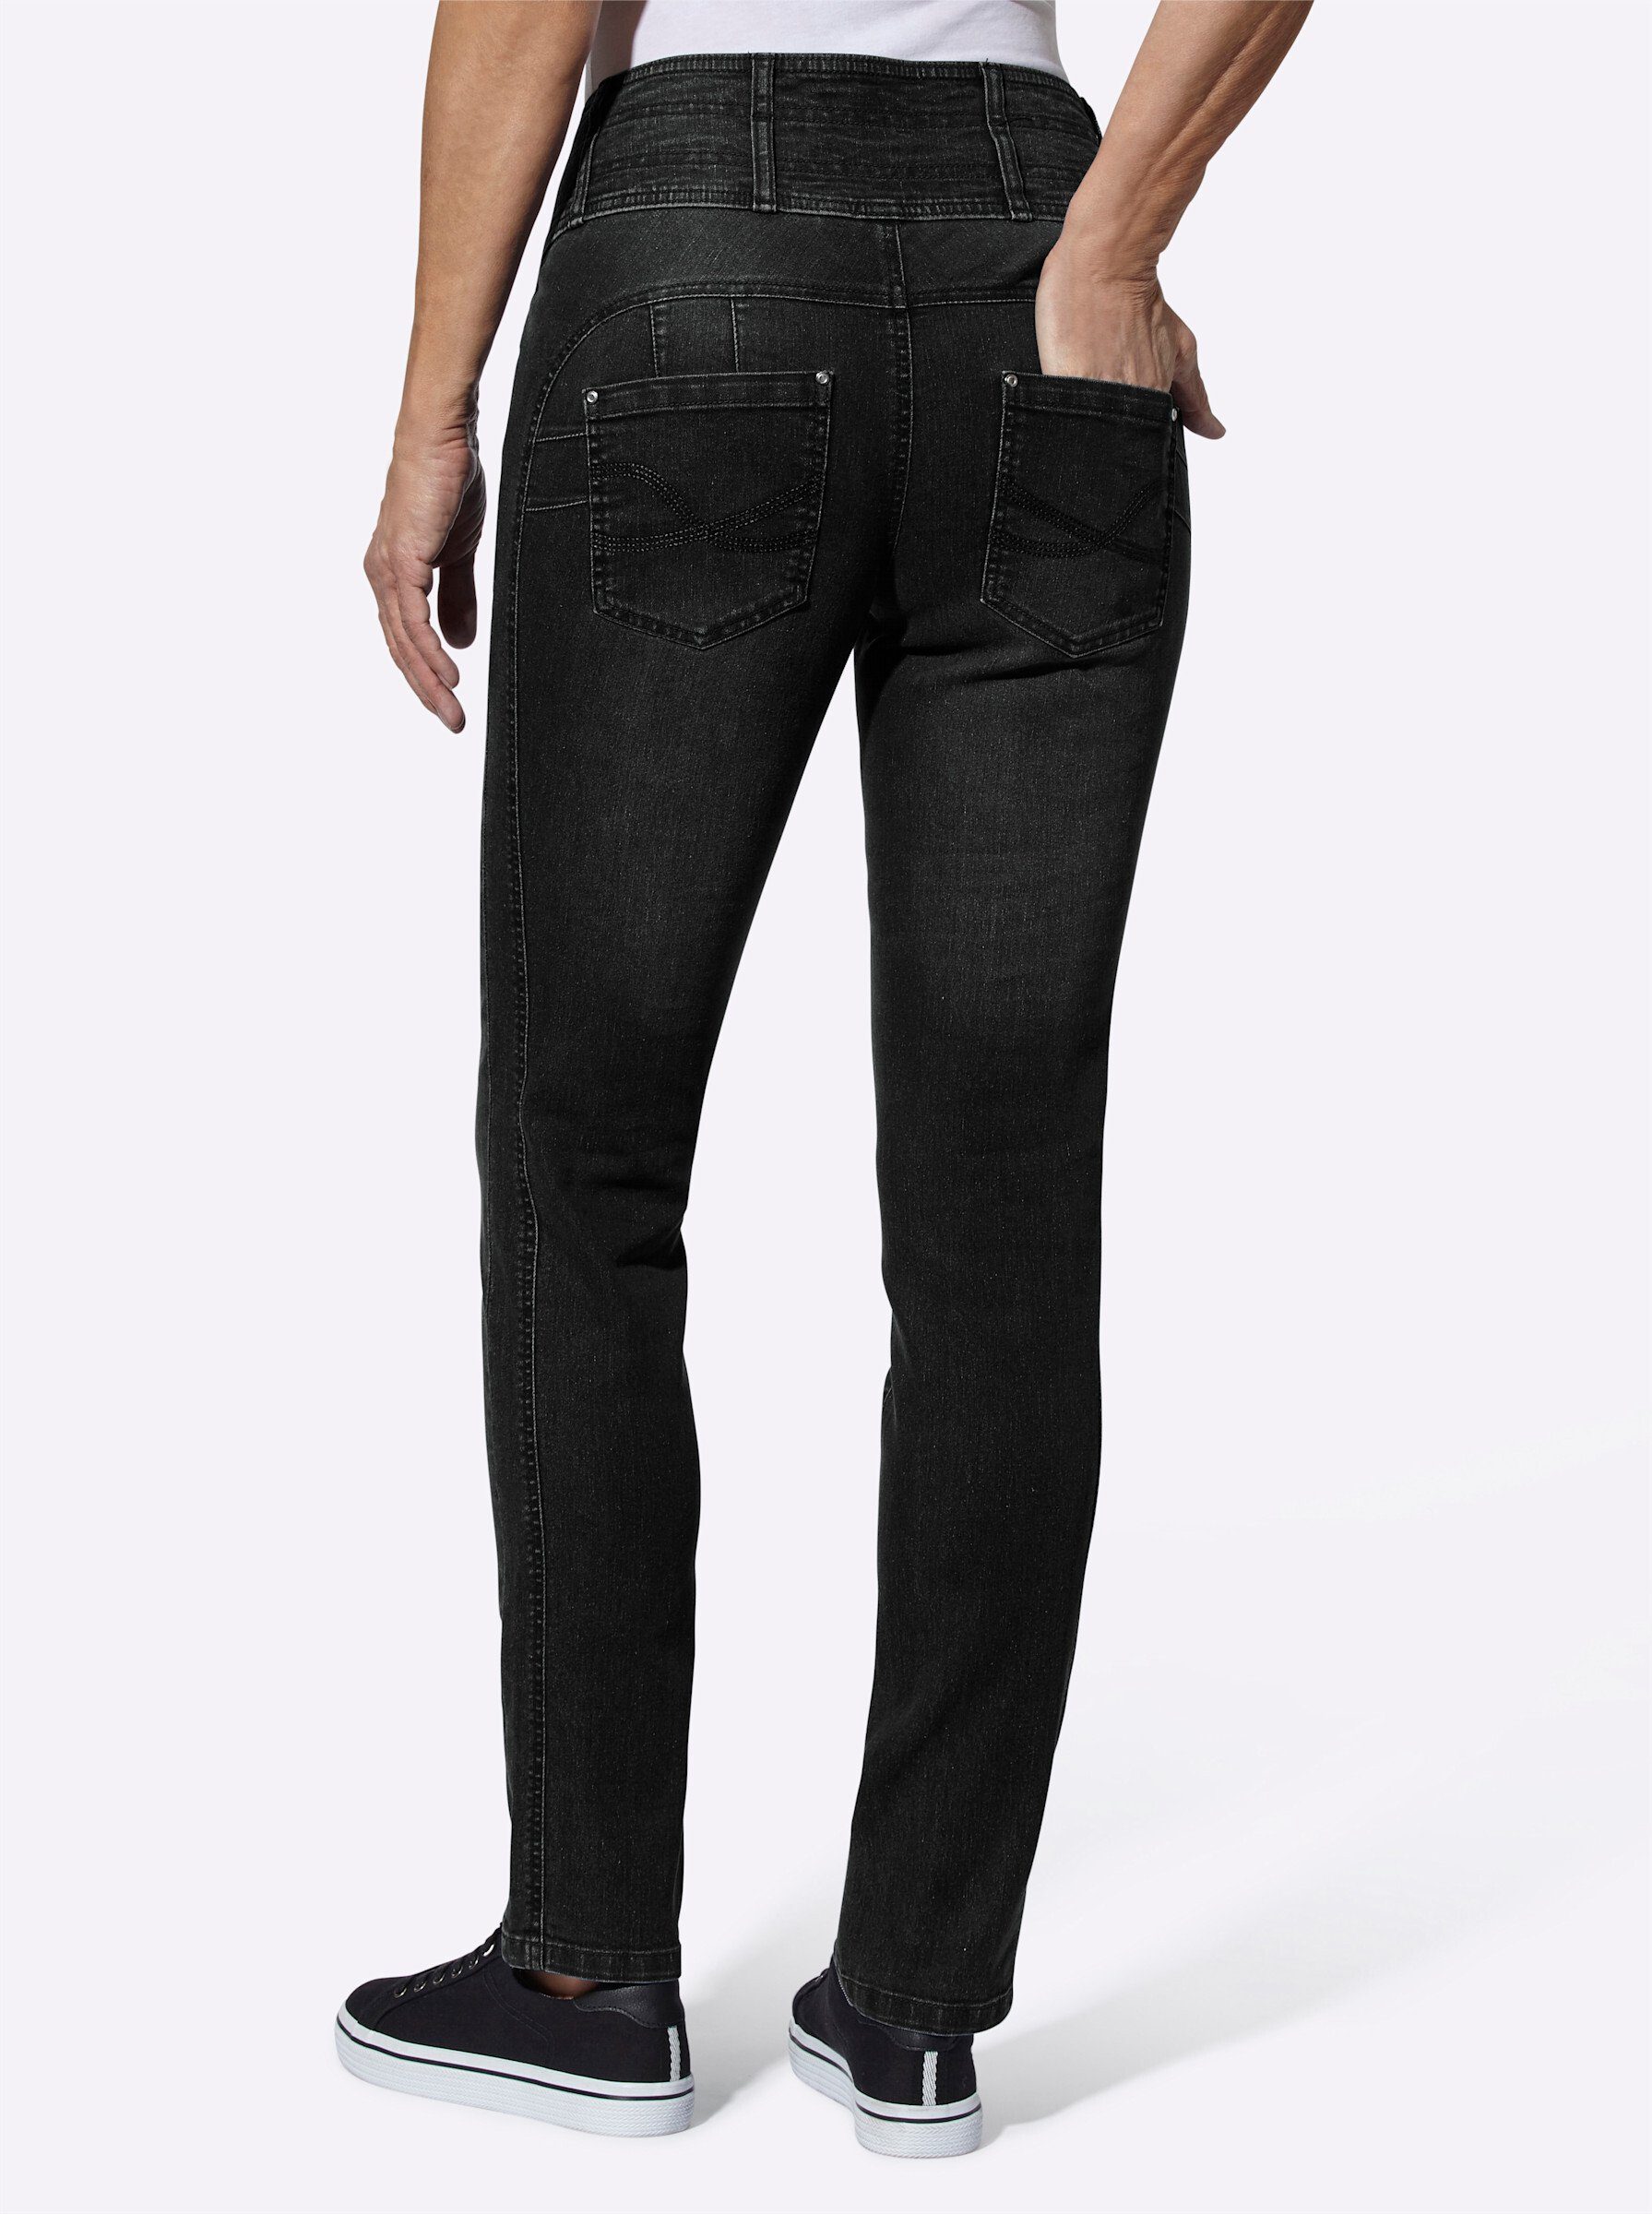 Jeans Bequeme an! Sieh black-denim